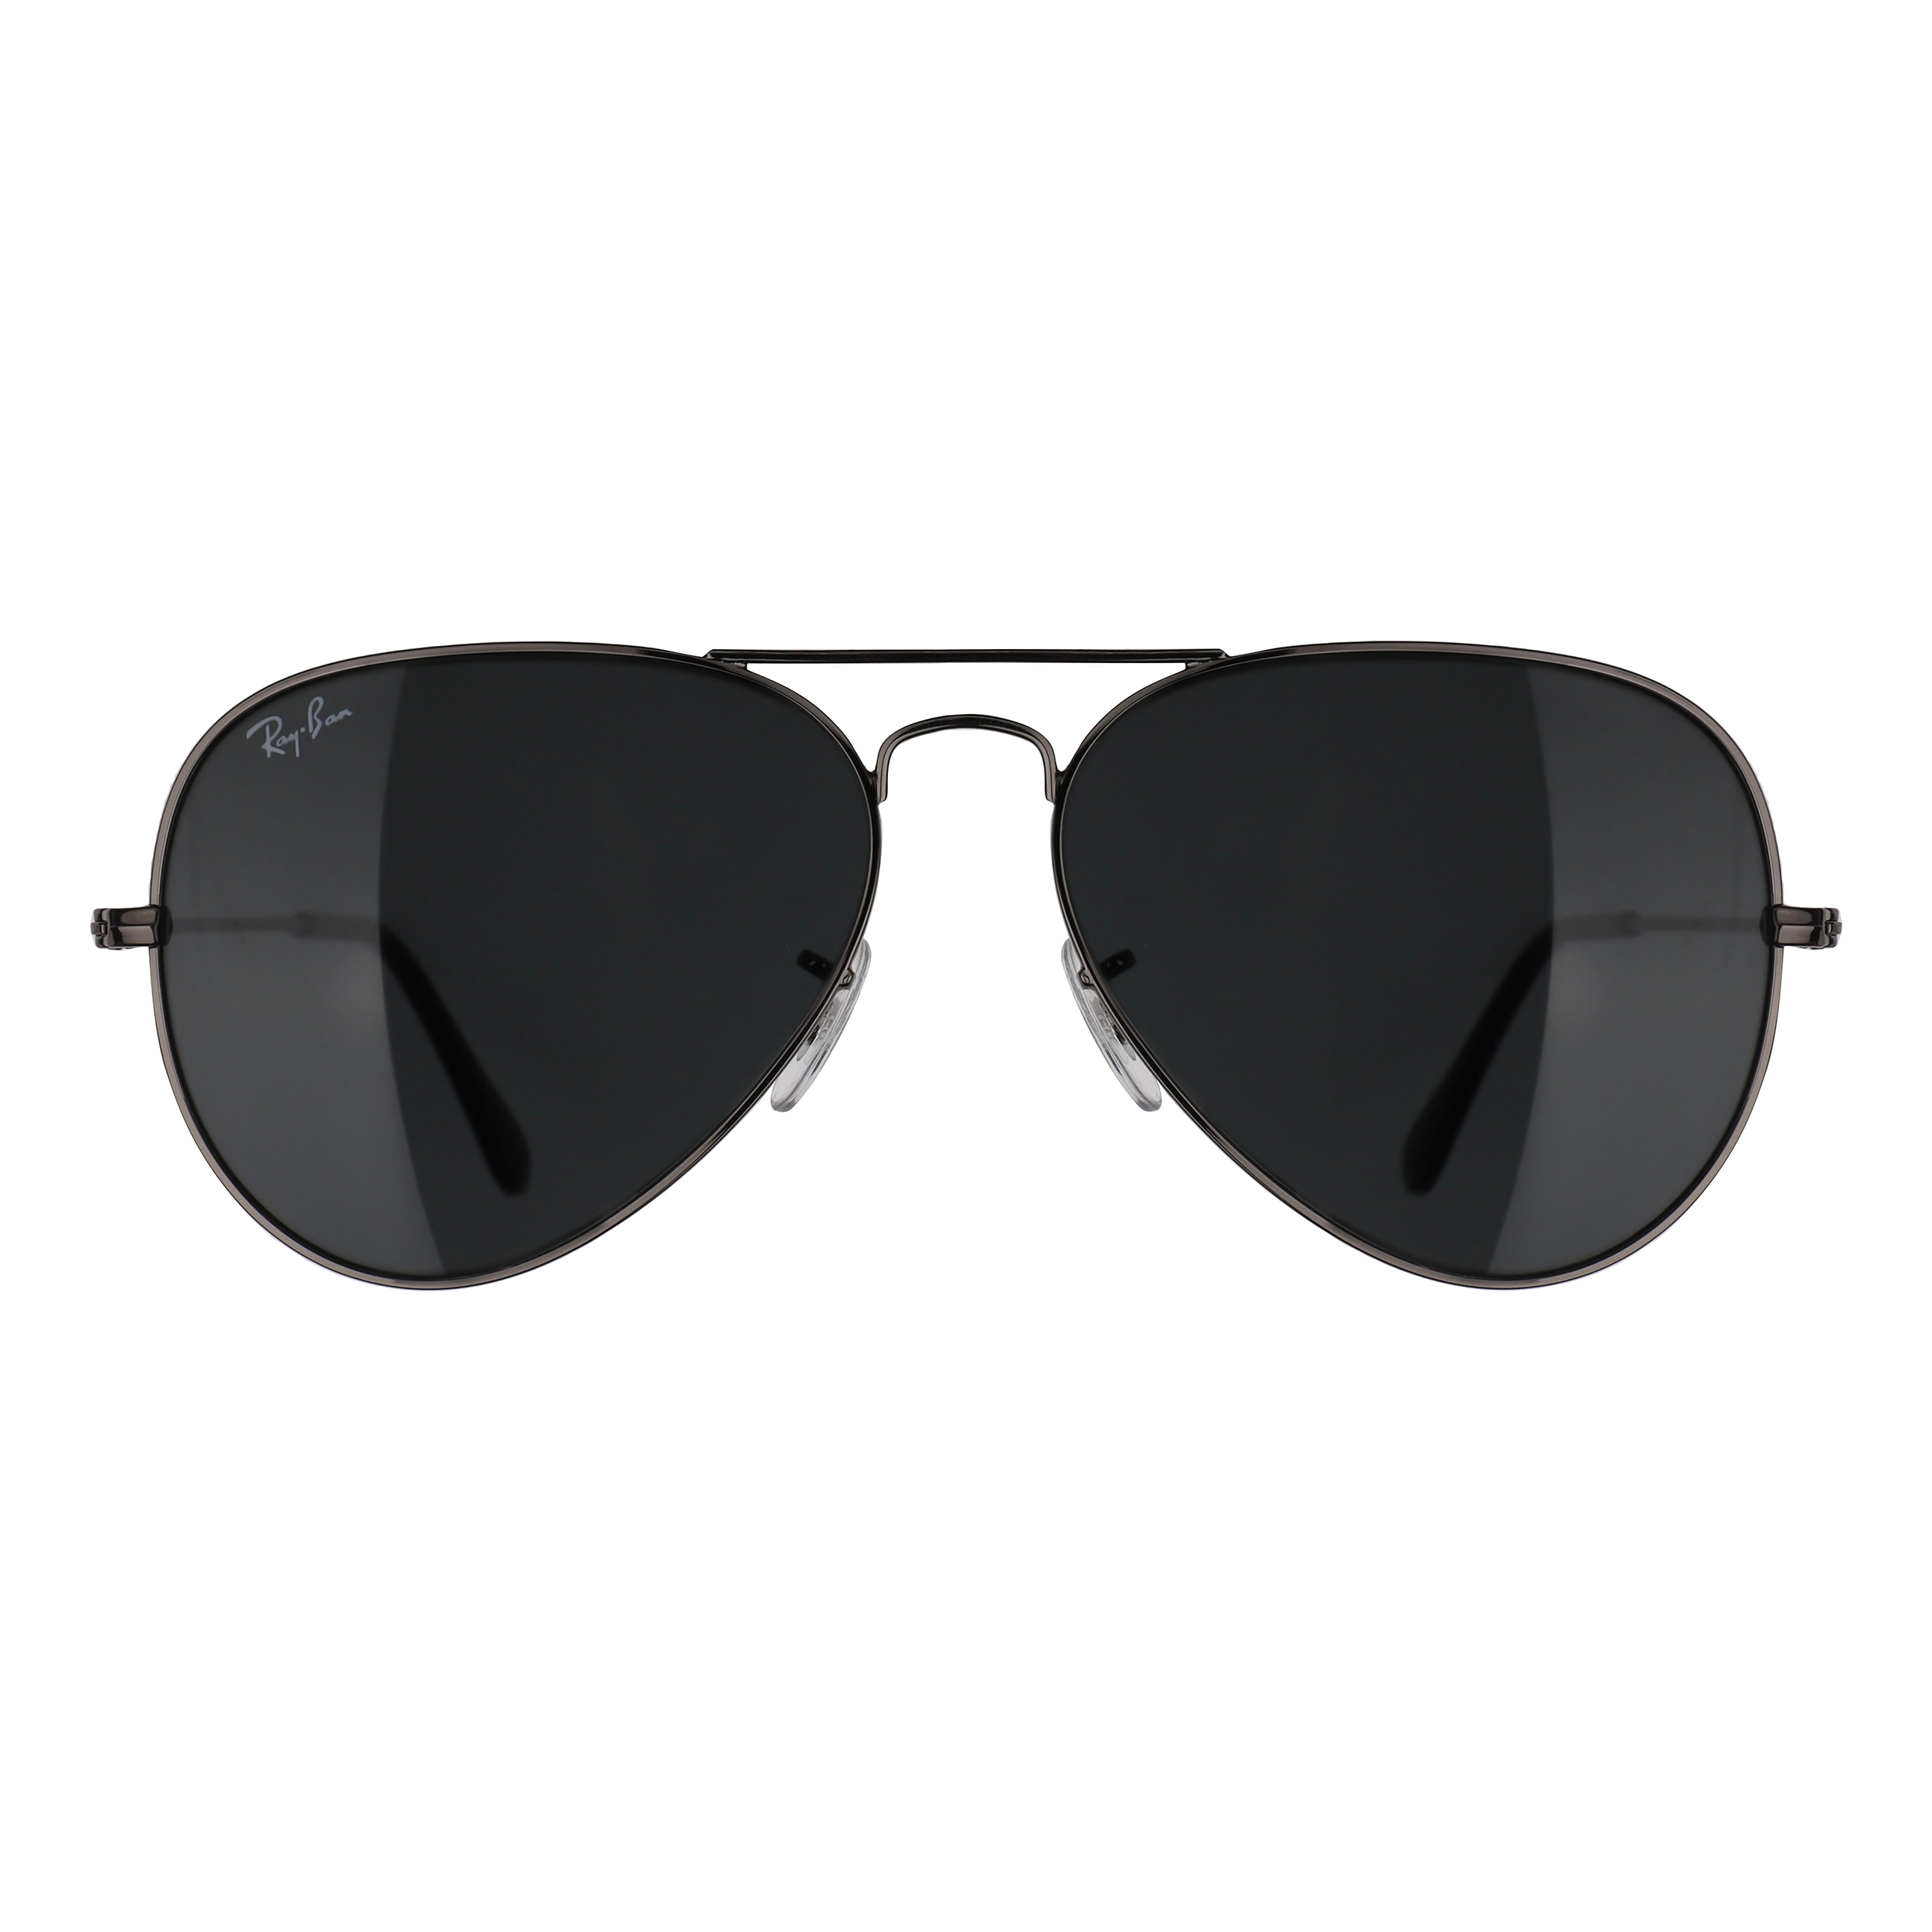 نکته خرید - قیمت روز عینک آفتابی ری بن مدل RB3025-004/62 خرید